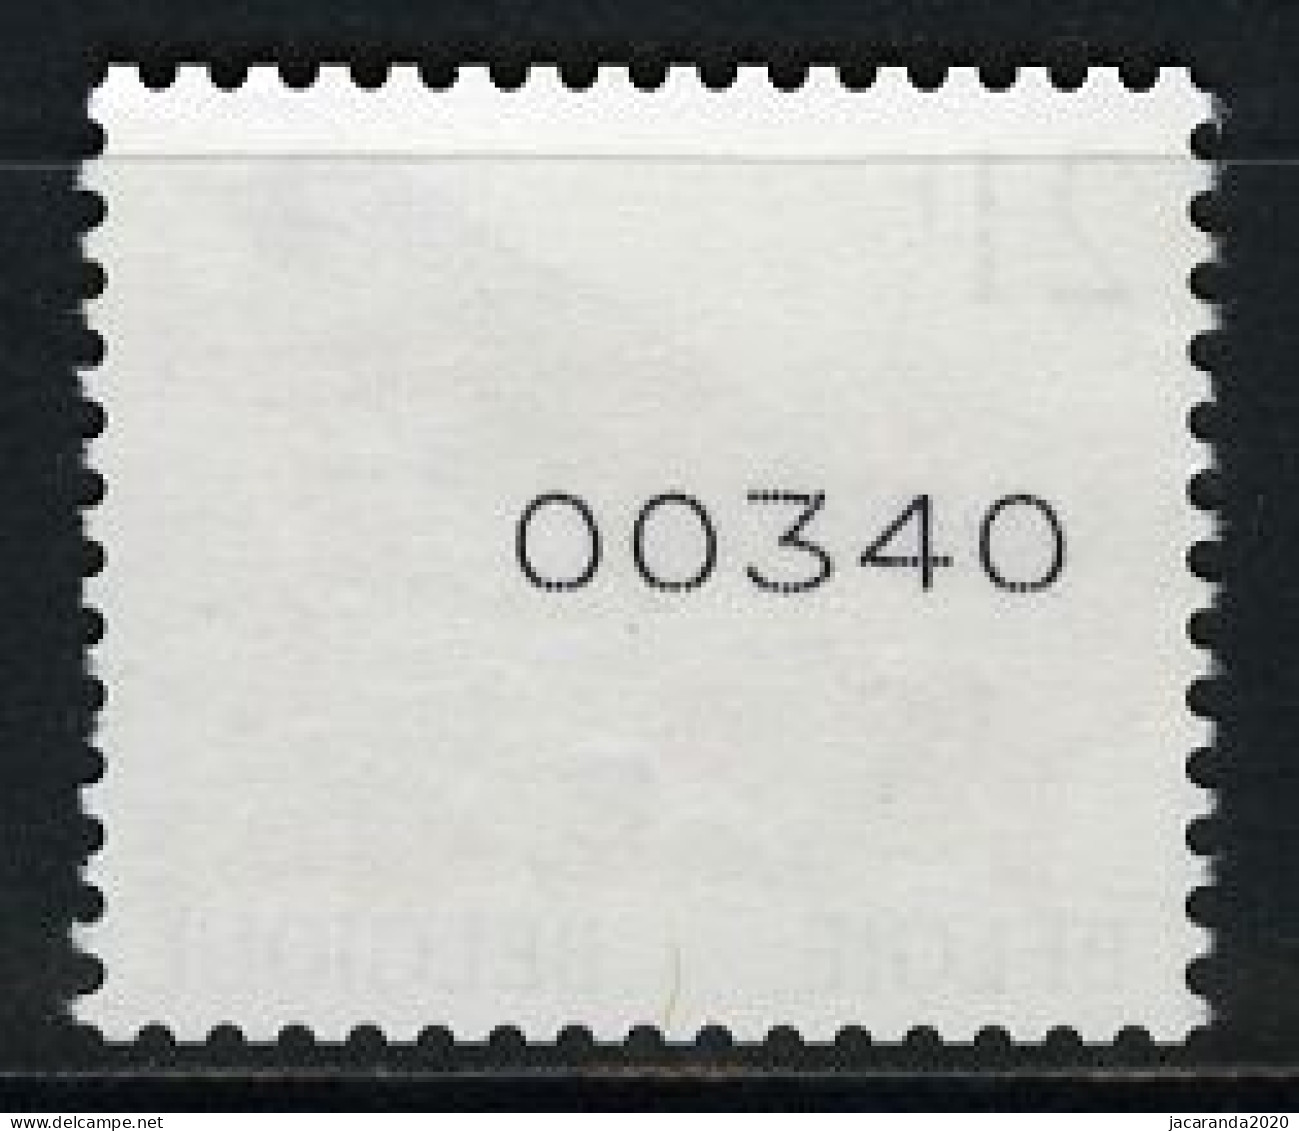 België R88 - Vogels - Oiseaux - Buzin (2792) - 21F - Kramsvogel - Rolzegel Met 5 Cijfers - Avec Numéro Au Verso - Coil Stamps